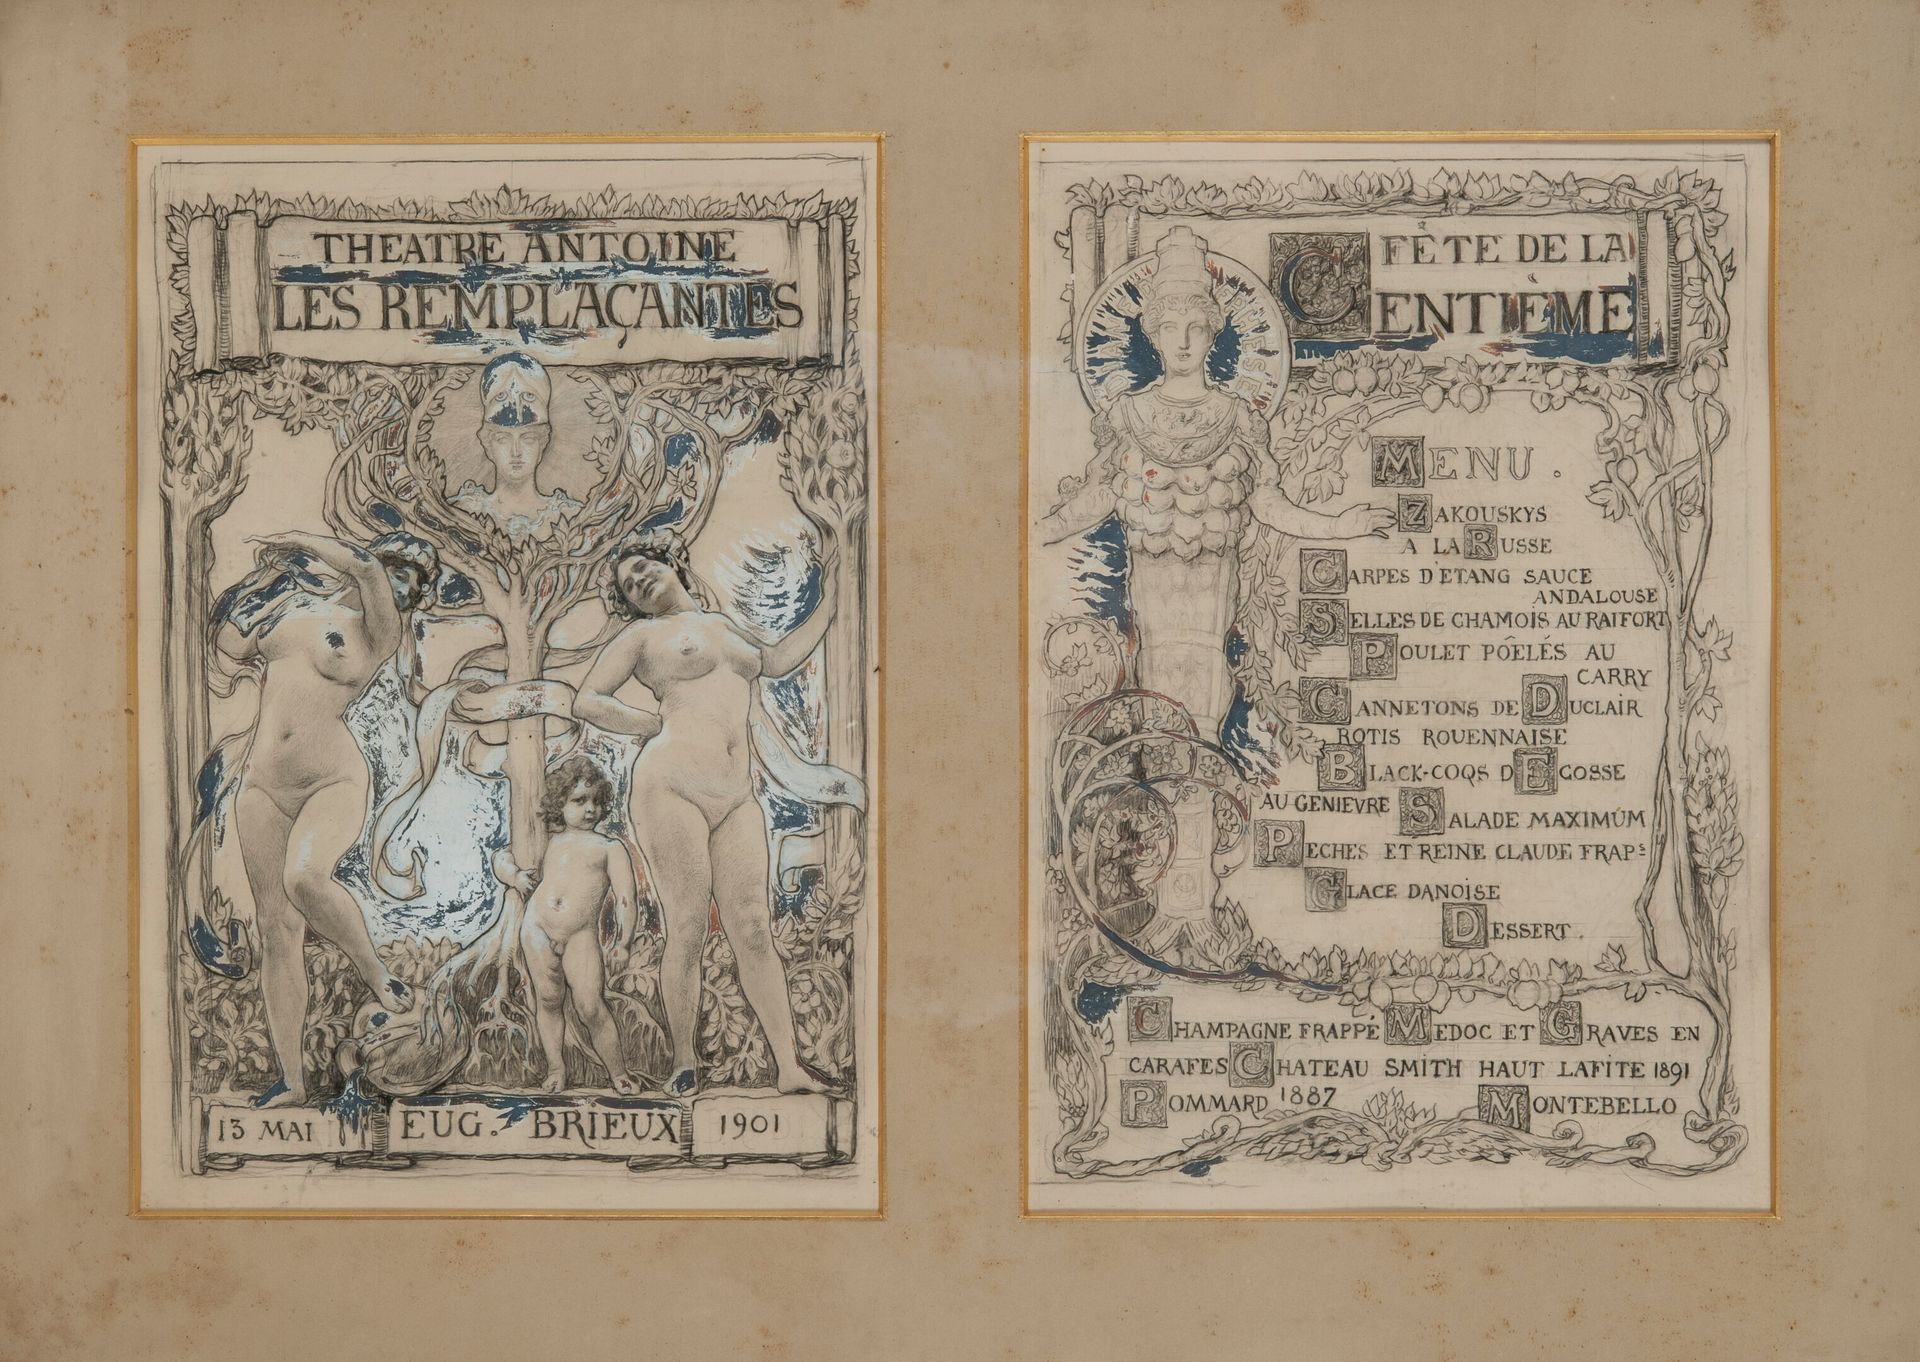 ECOLE FRANÇAISE DU DÉBUT DU XXÈME SIÈCLE 菜单项目，1901年。

安托万剧院上演了尤格的戏剧 "Les Remplaç&hellip;